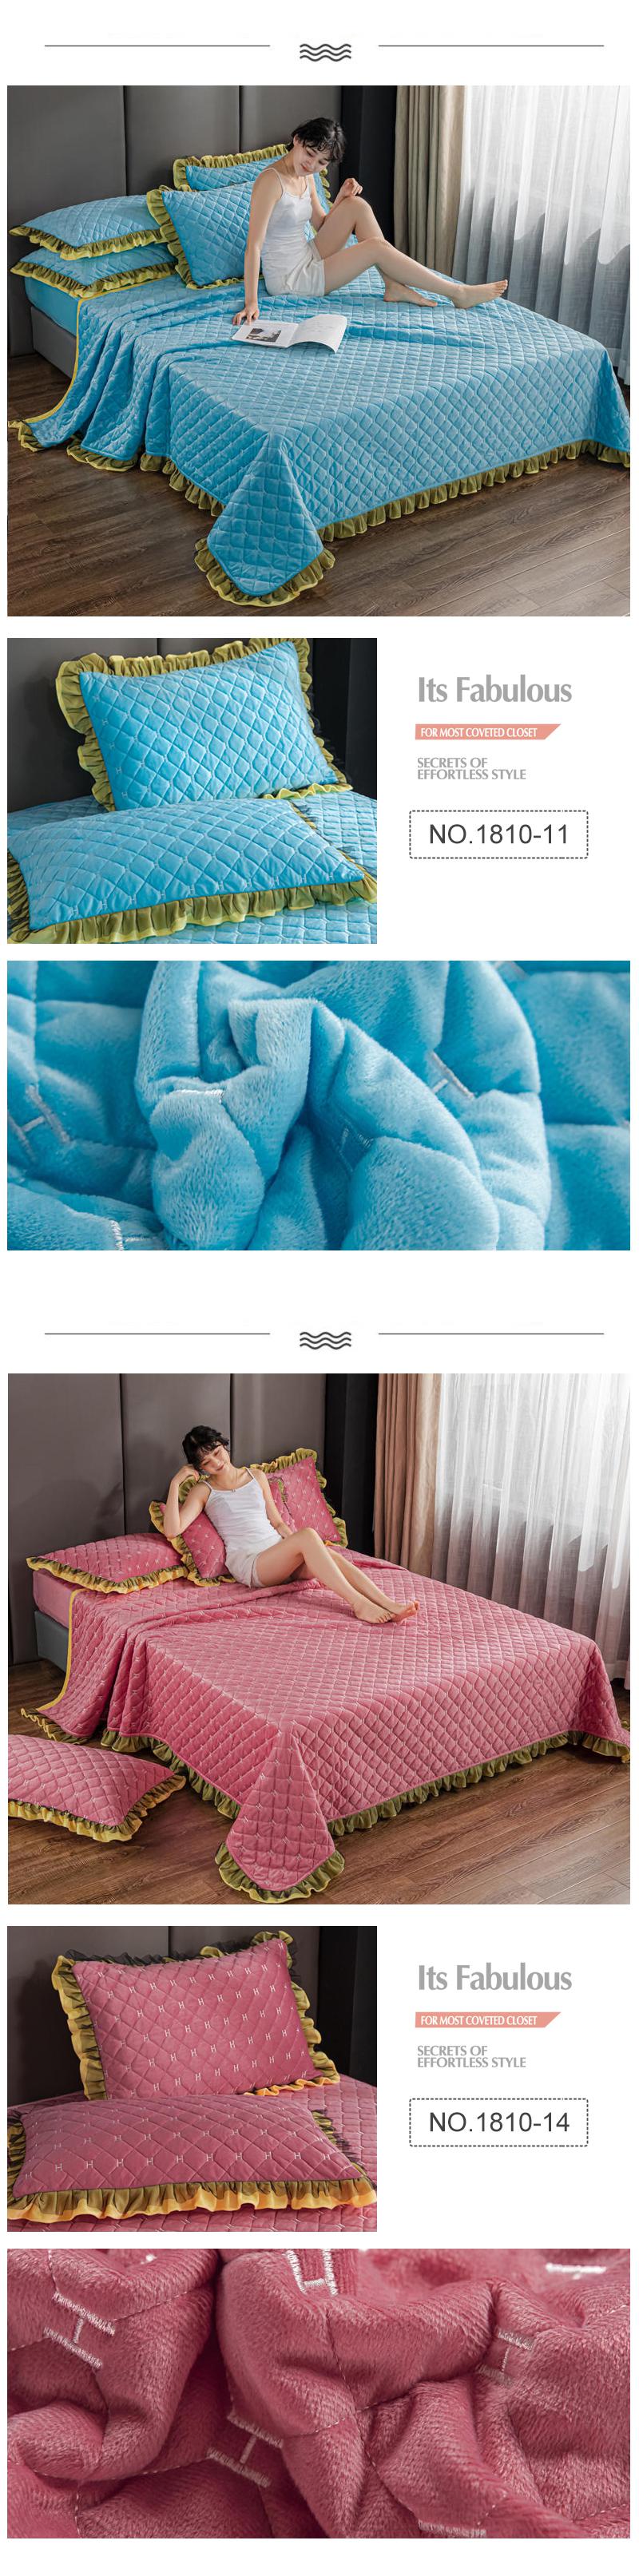 royal blue Cover Set Bedspread